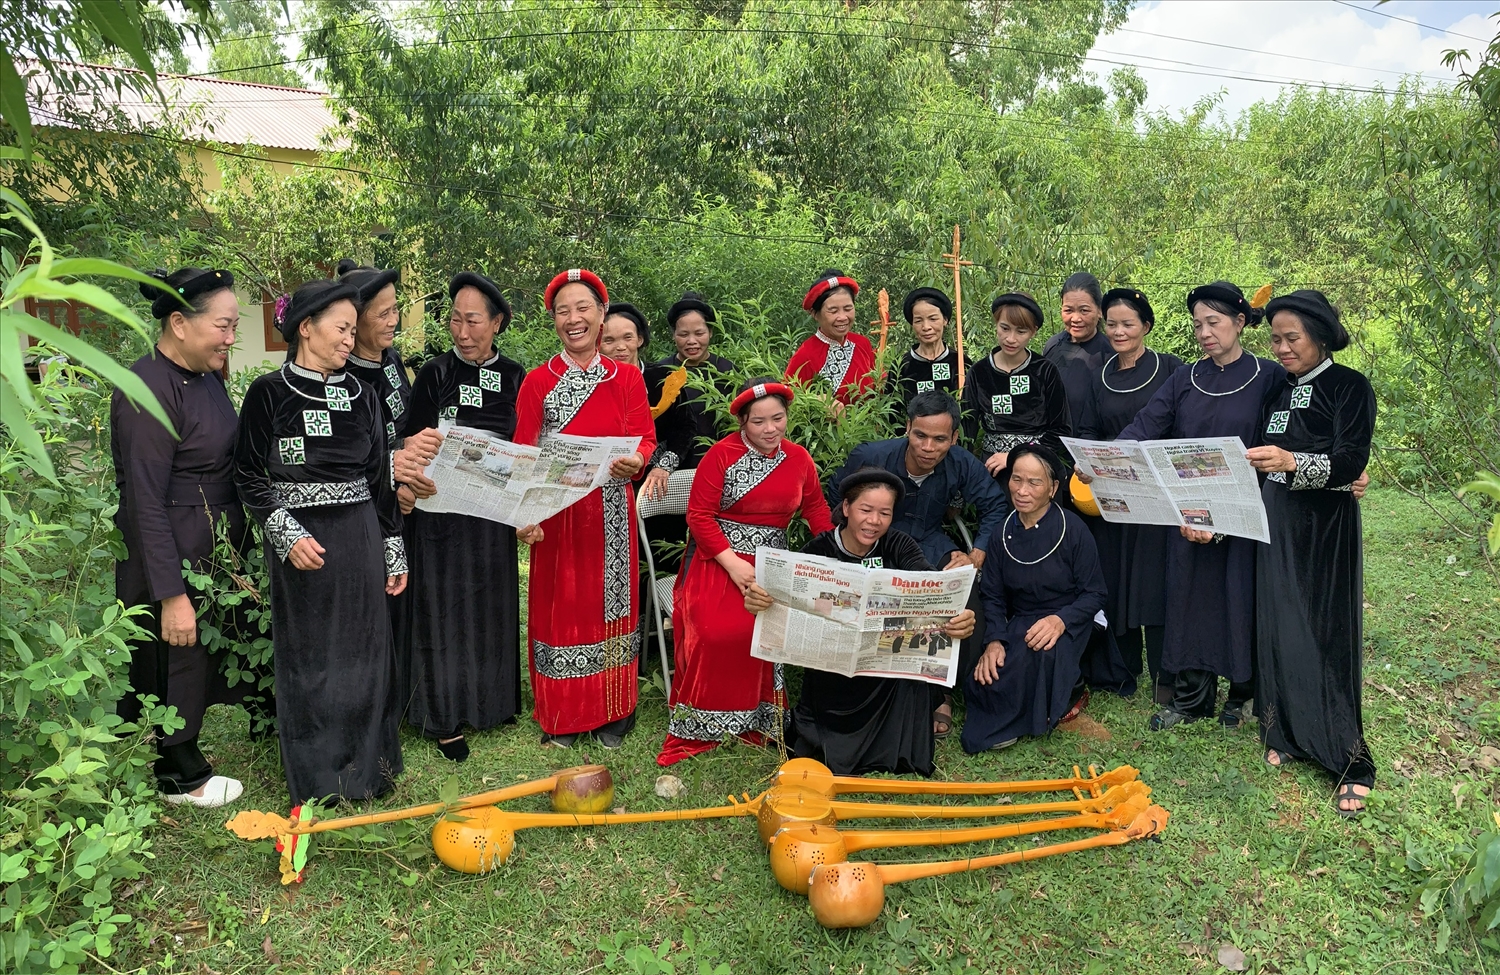 Câu lạc bộ sinh hoạt văn hóa văn nghệ xã Bằng Hữu tìm hiểu về các mô hình bảo tồn văn hóa của các DTTS trên Báo Dân tộc và Phát triển